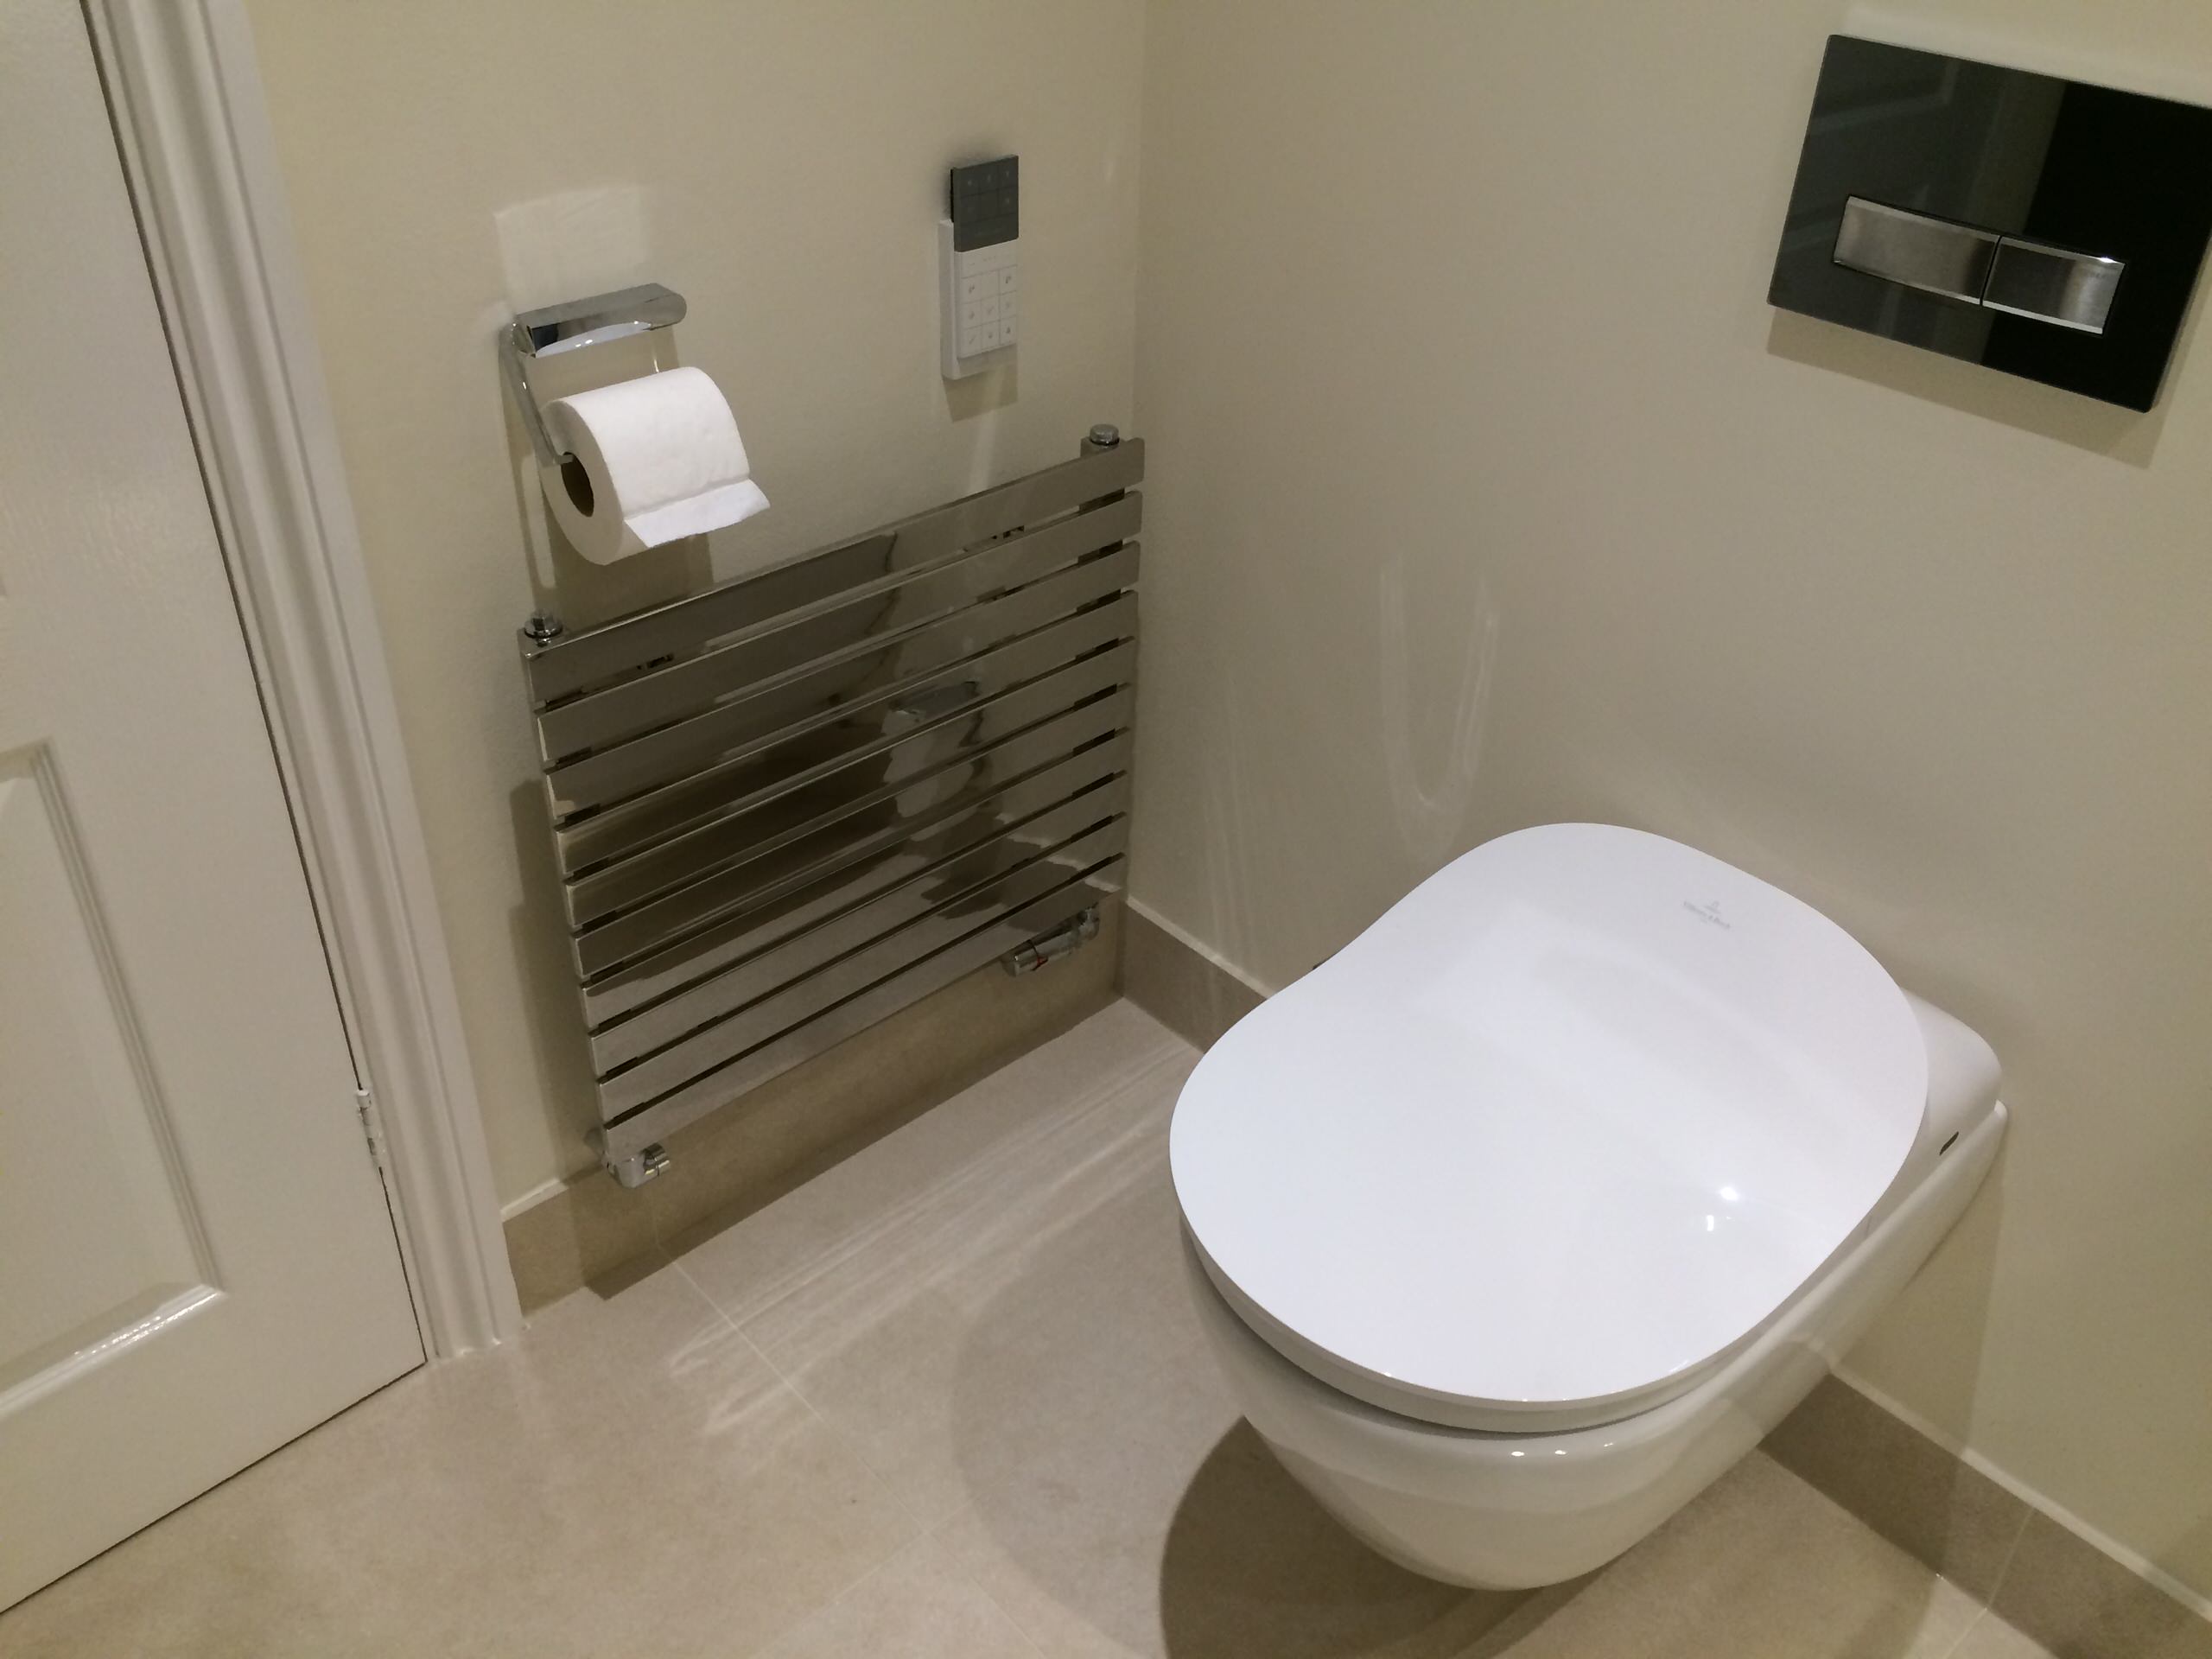 En Suite Bathroom Project in Esher Surrey